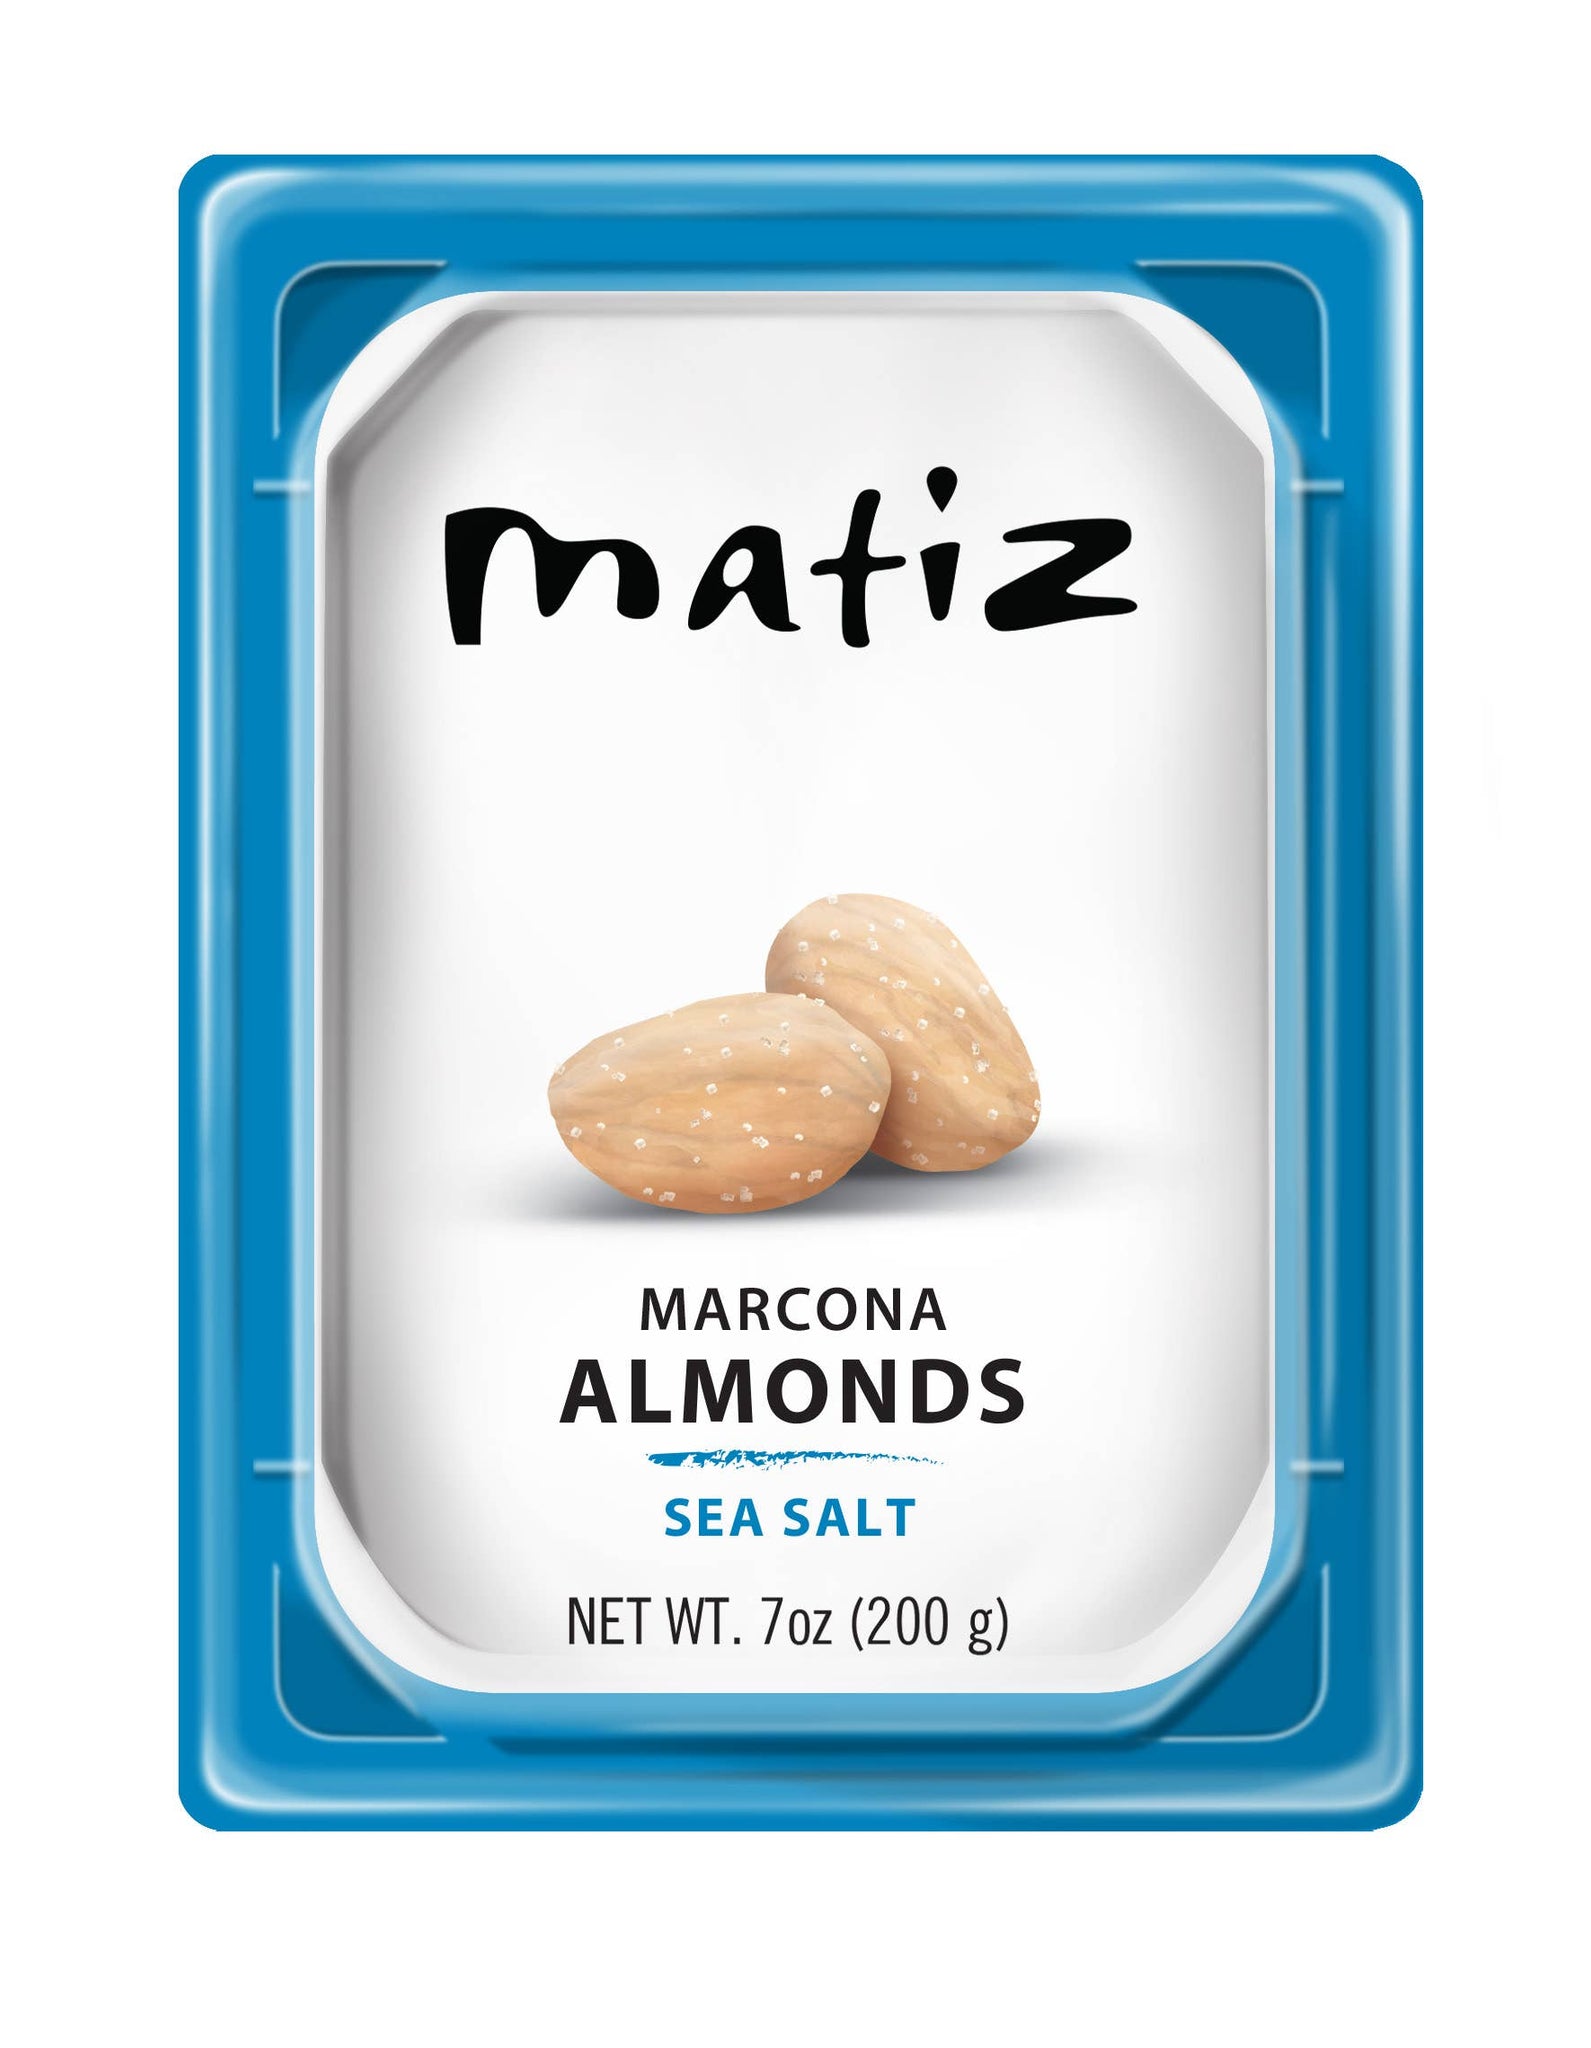 Matiz Marcona almonds with sea salt tray - 200g